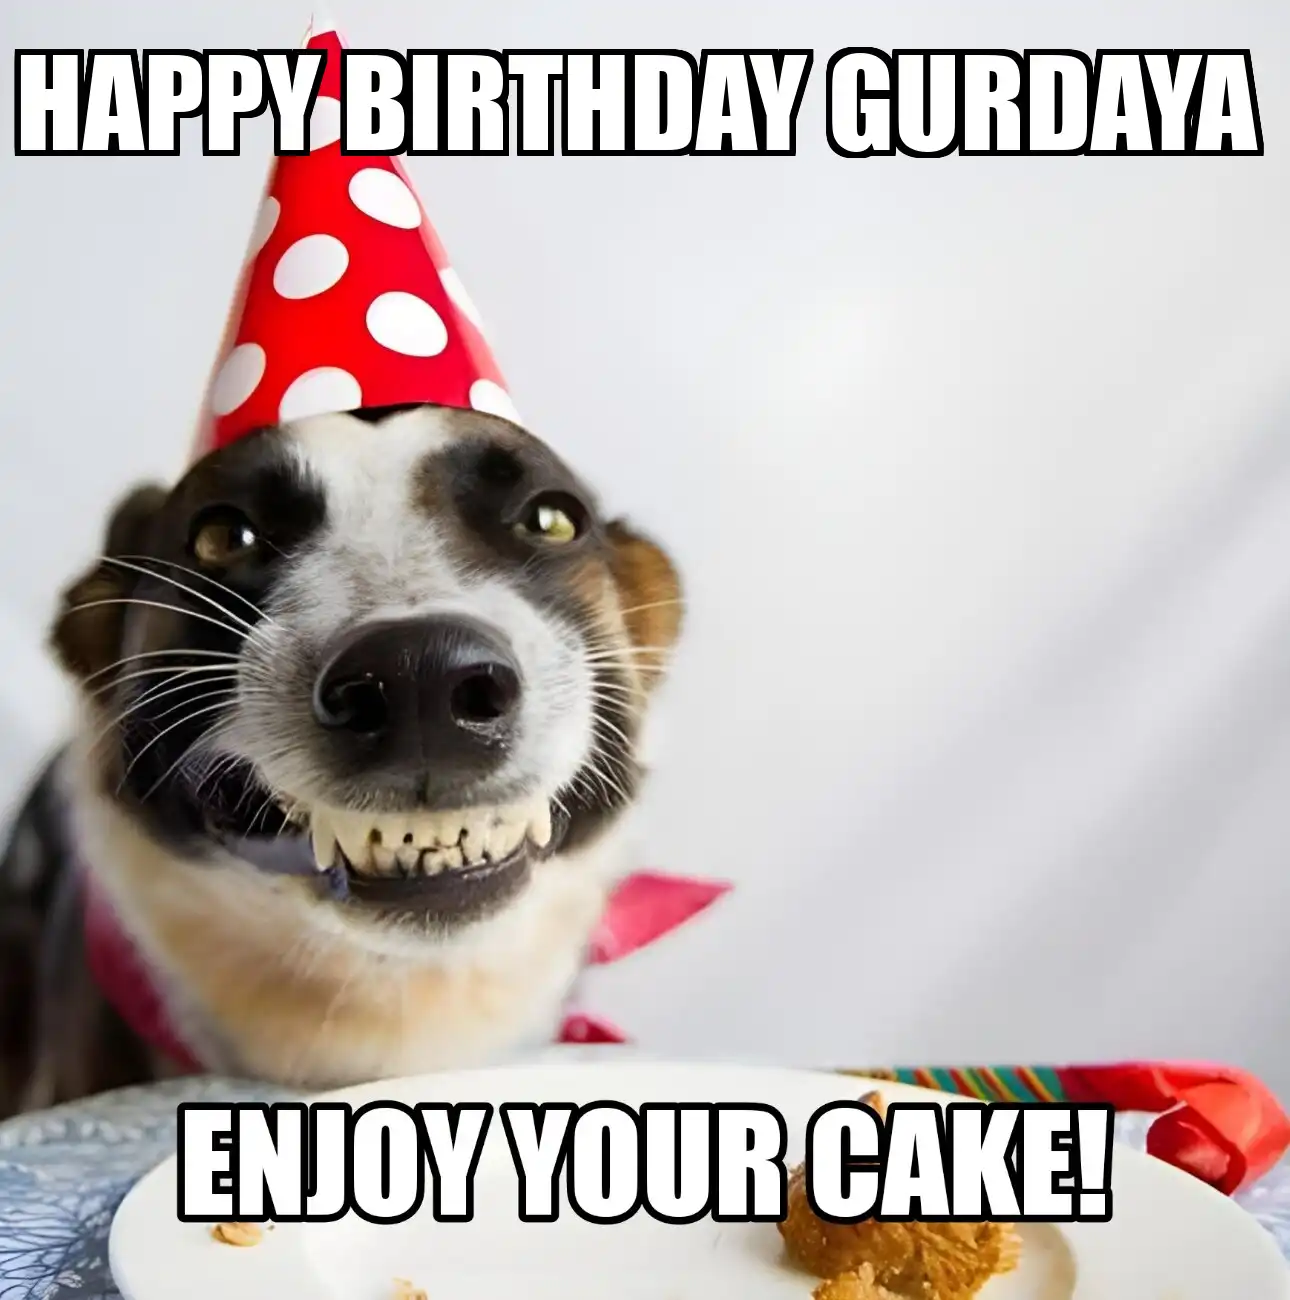 Happy Birthday Gurdaya Enjoy Your Cake Dog Meme